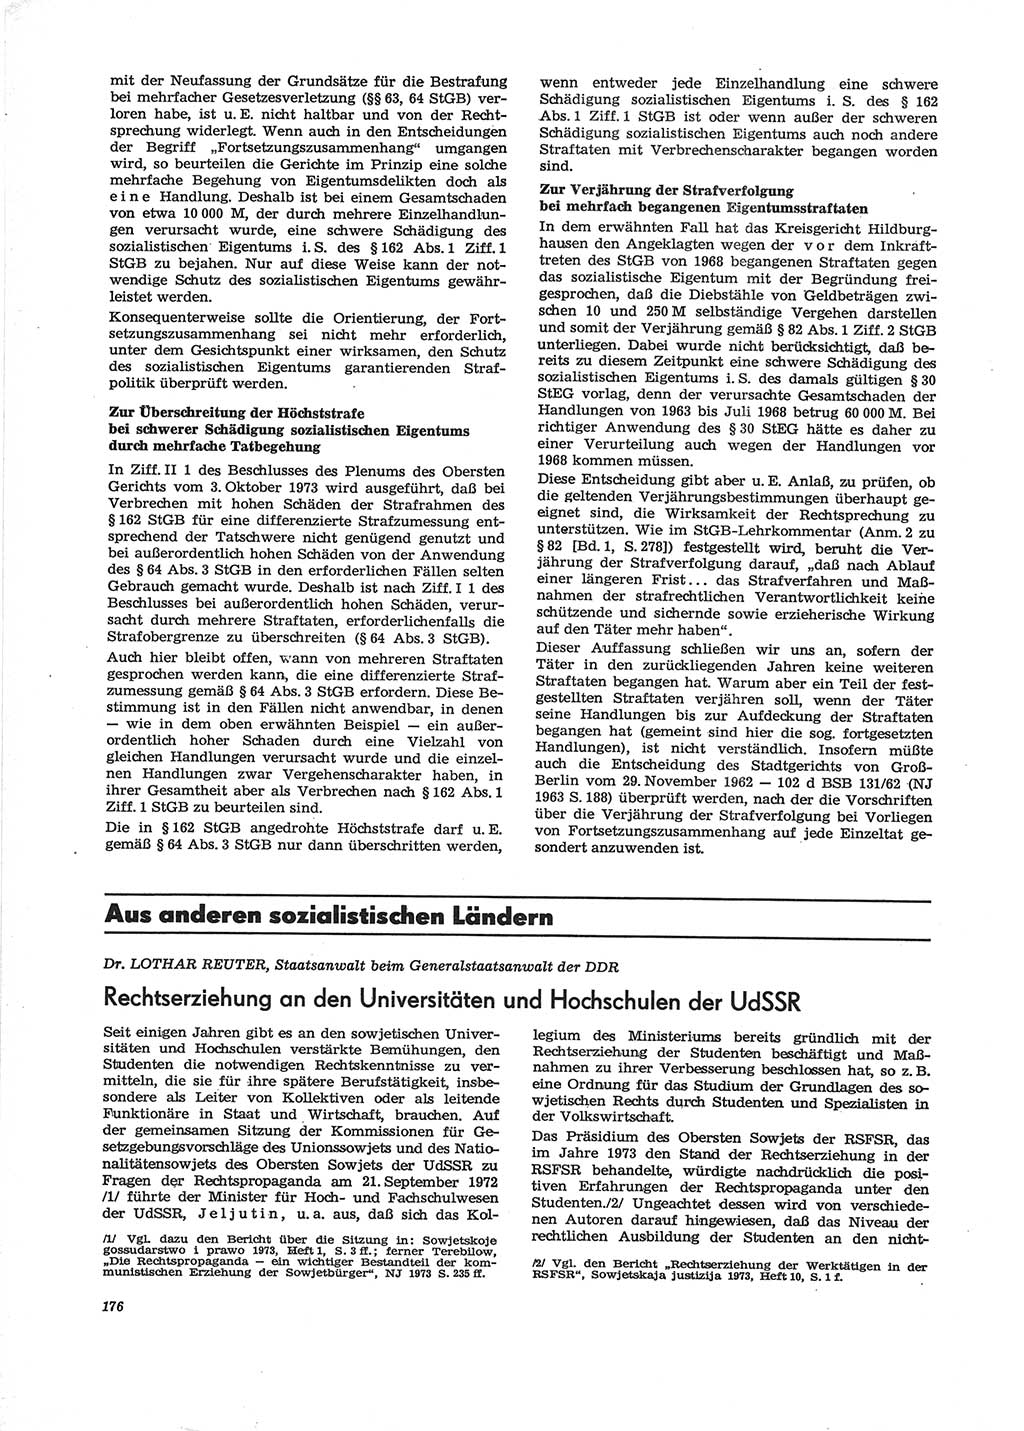 Neue Justiz (NJ), Zeitschrift für Recht und Rechtswissenschaft [Deutsche Demokratische Republik (DDR)], 28. Jahrgang 1974, Seite 176 (NJ DDR 1974, S. 176)